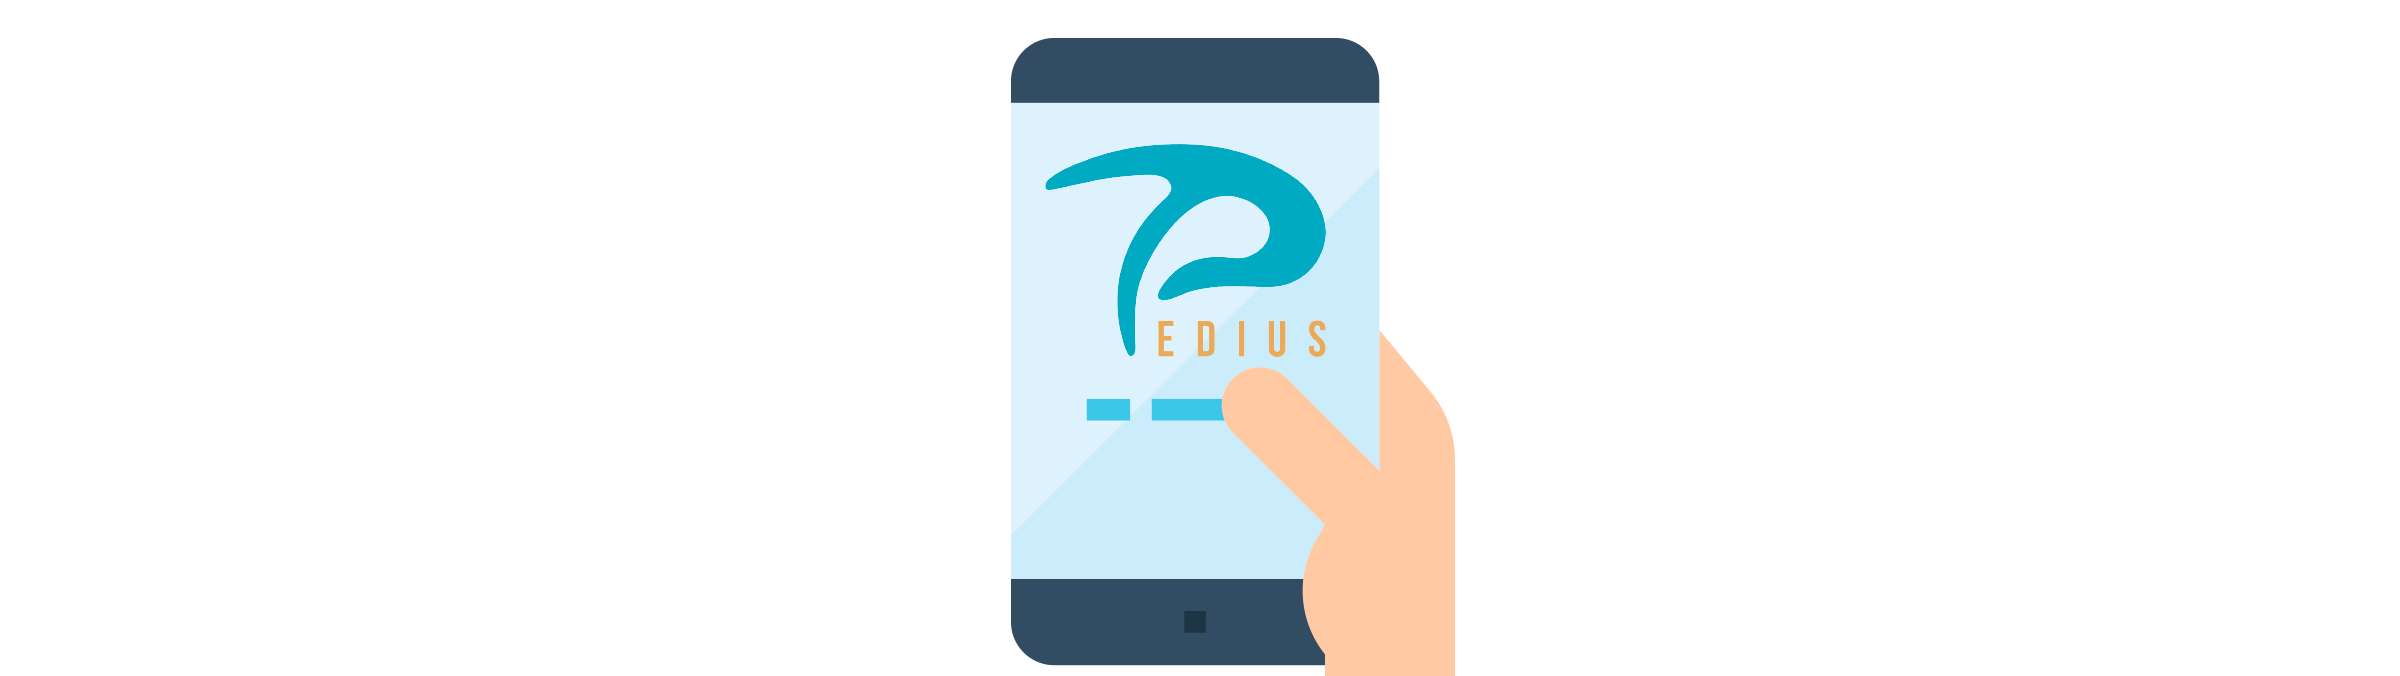 Image : Pedius app